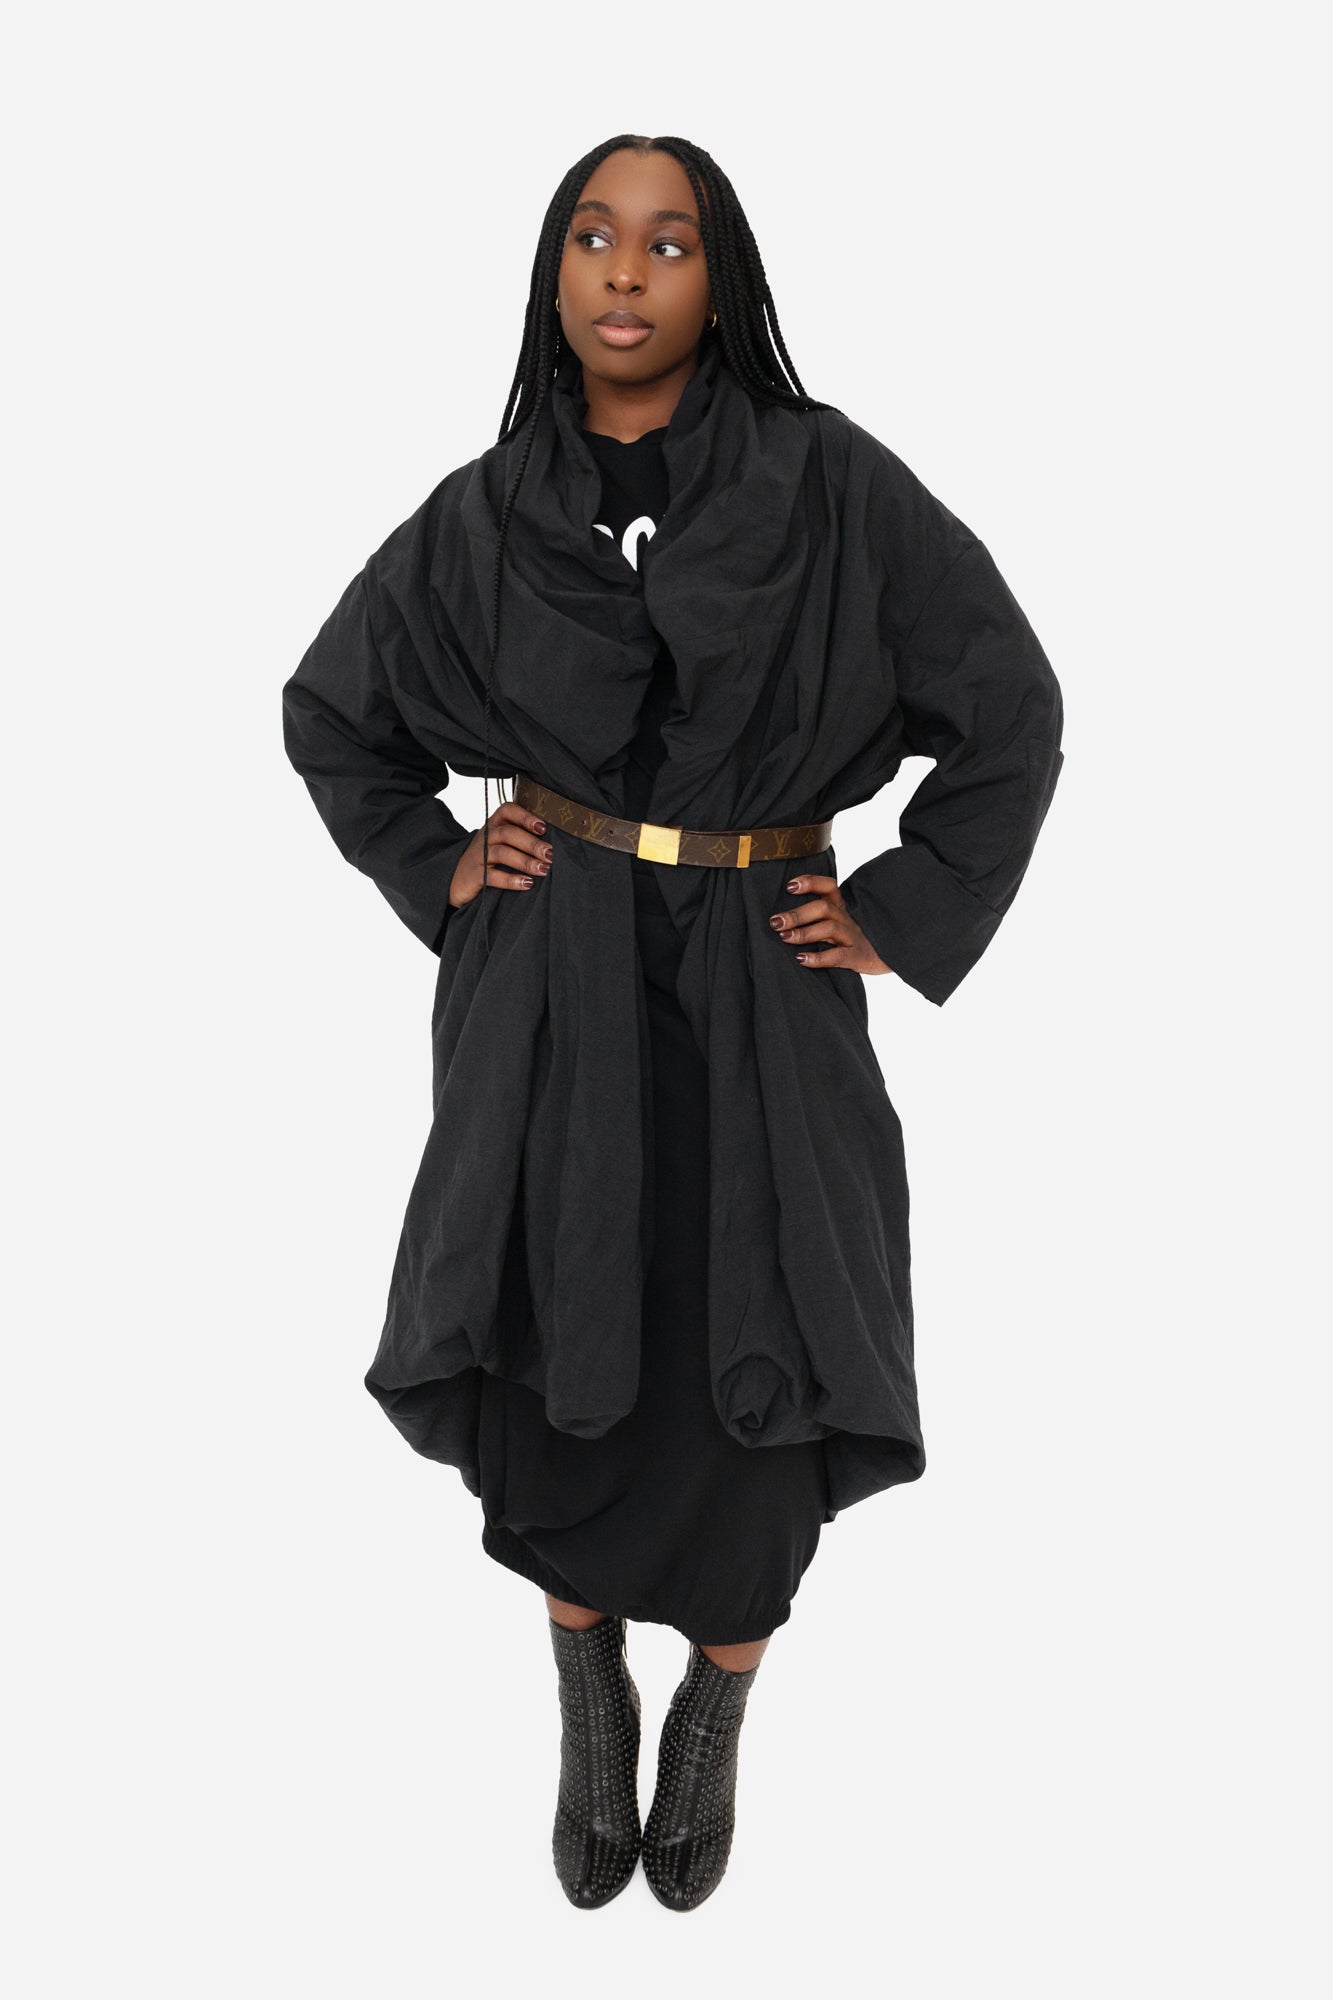 Black Asymmetrical Coat